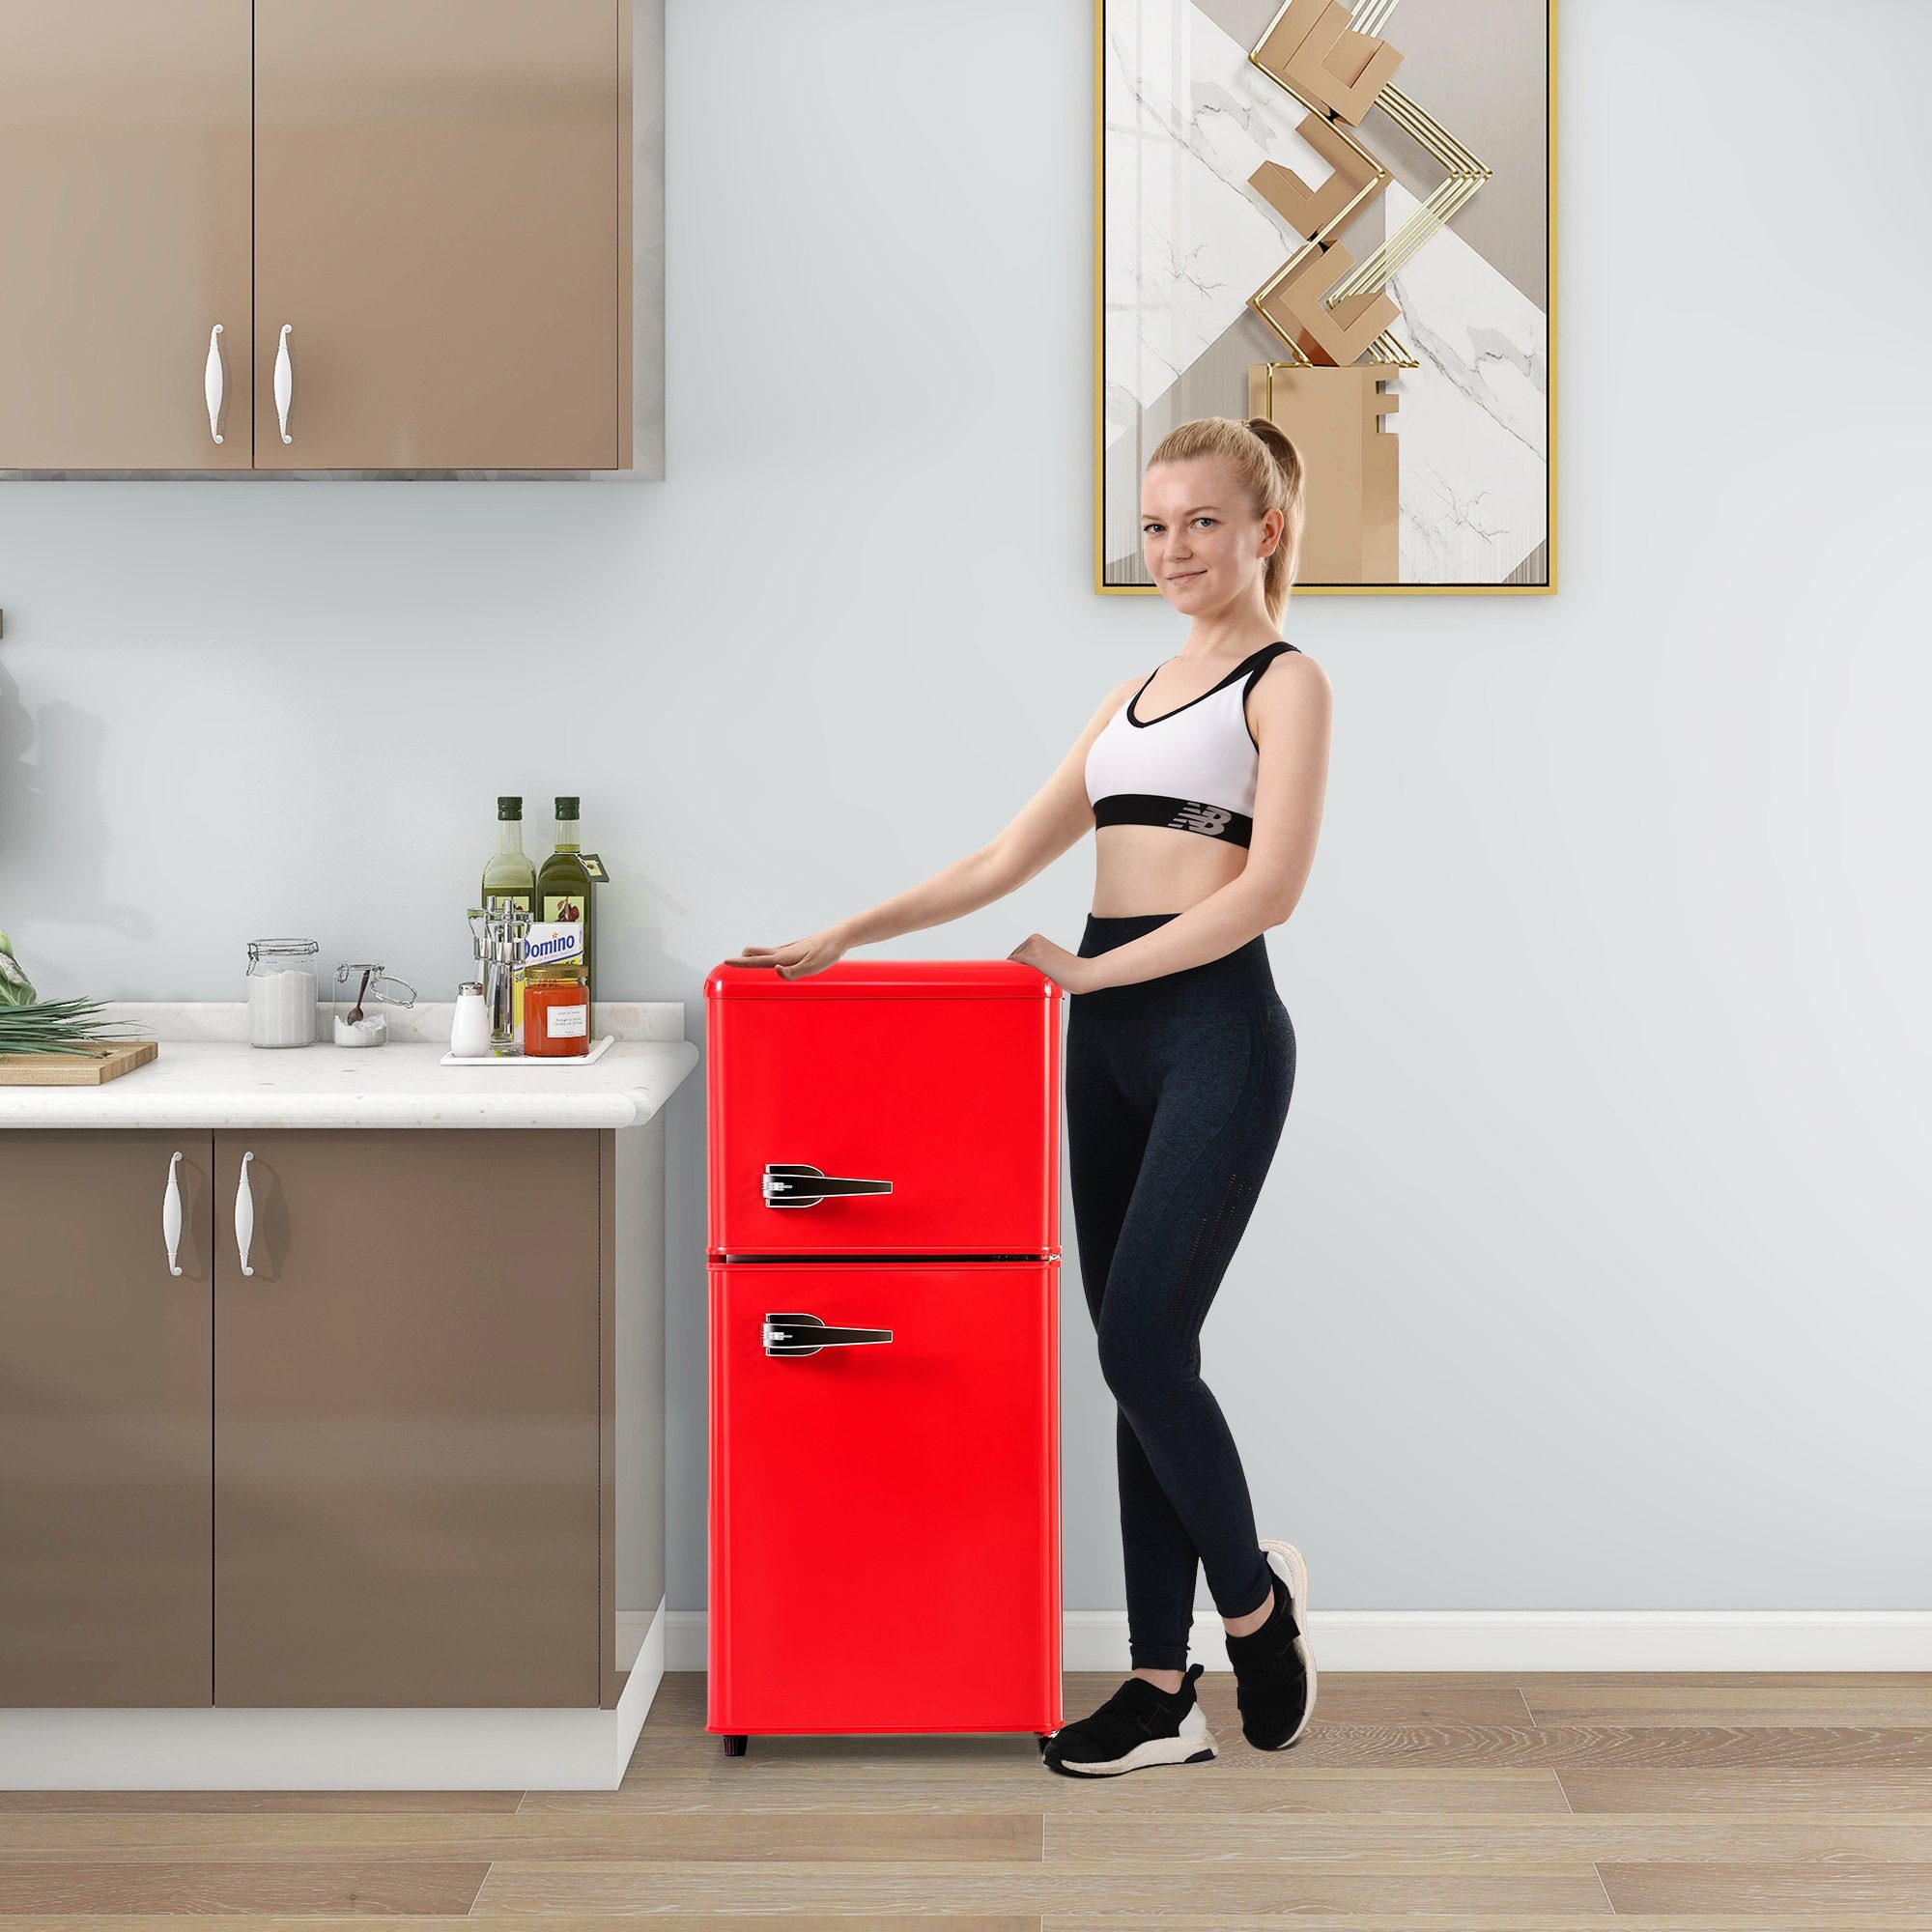 Kühlschrank Gefrierfach freistehend Retro 83 cm 90 Liter Rot Respekta